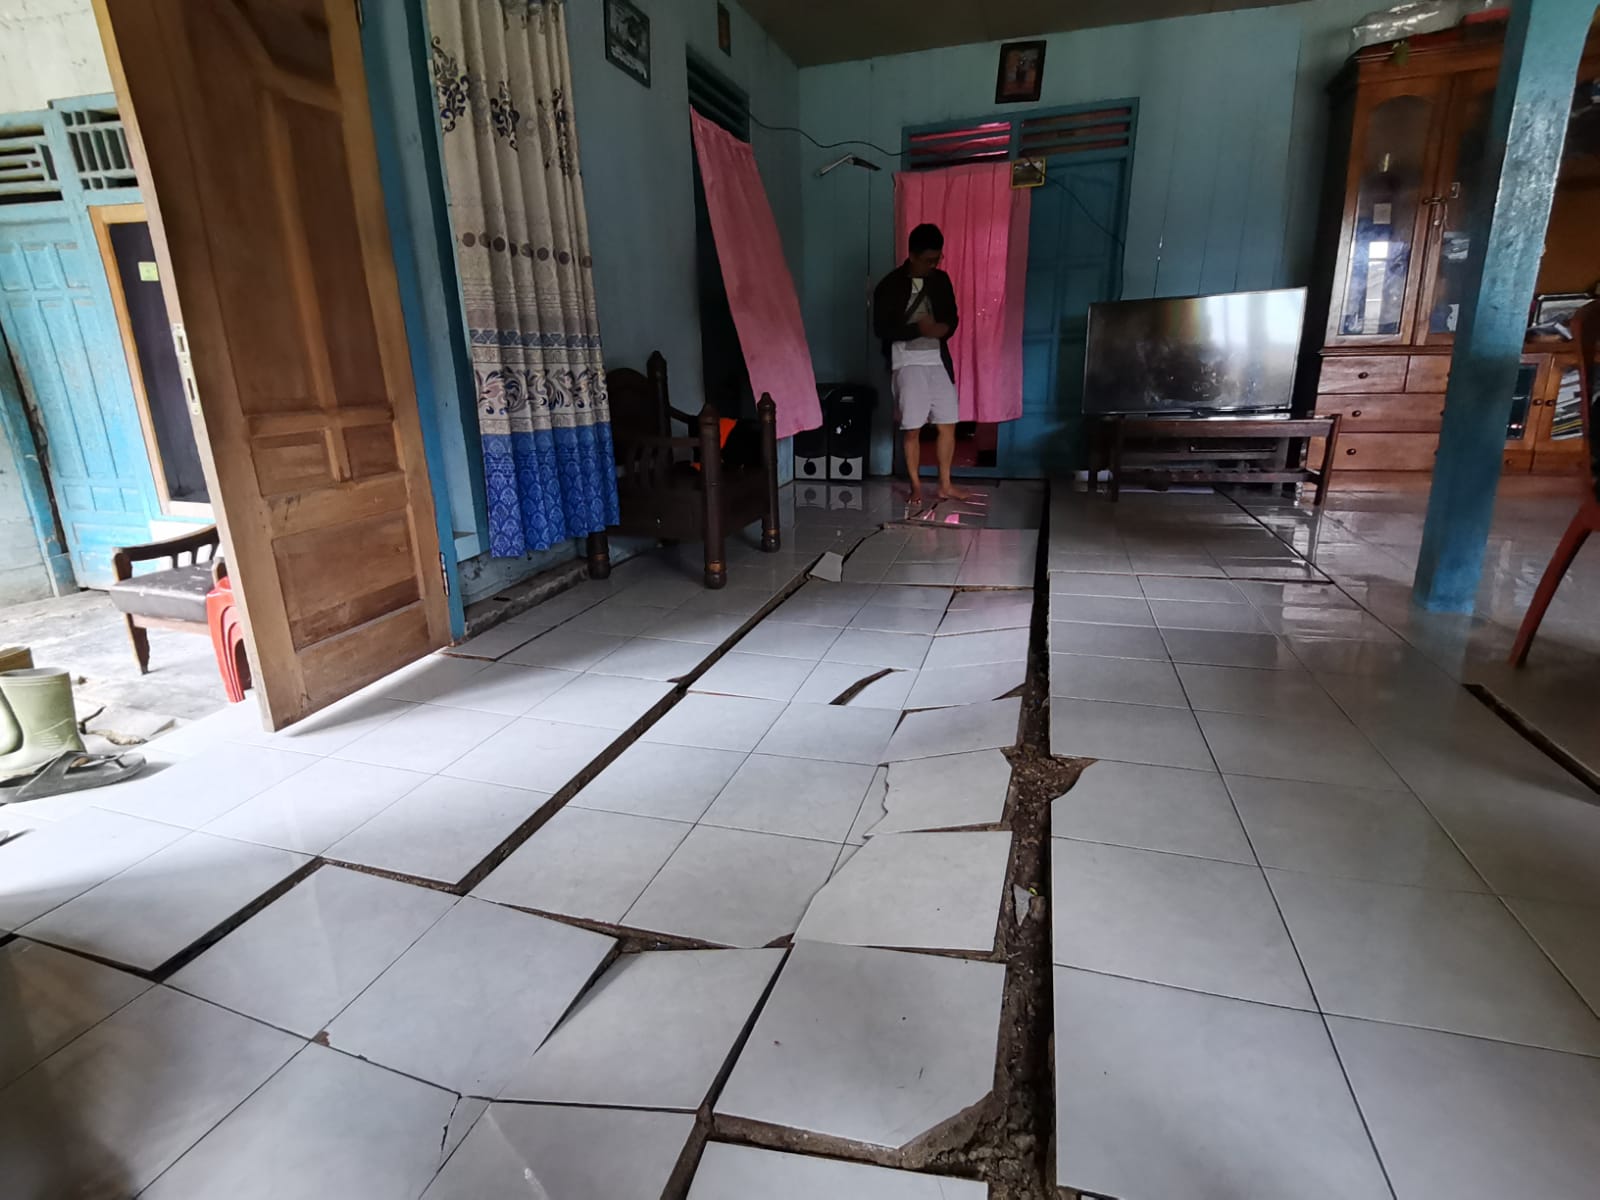  Rumah Warga Satu Dusun di Banjarnegara Rusak gegara Tanah Gerak